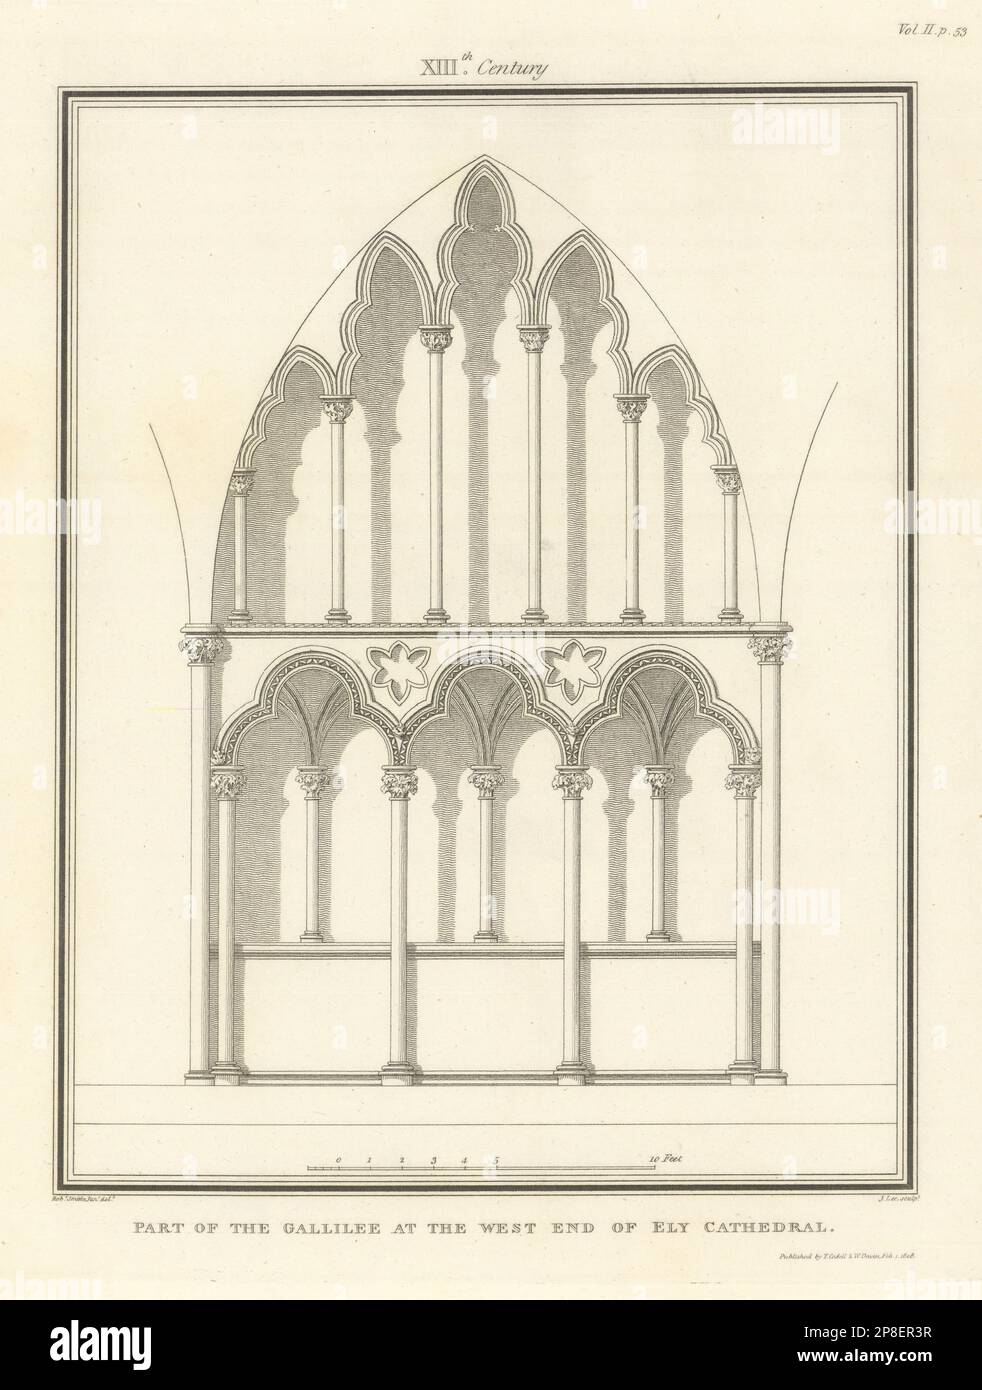 Parte della Gallilee al West End della Cattedrale di Ely. SMIRKE 1810 vecchia stampa Foto Stock